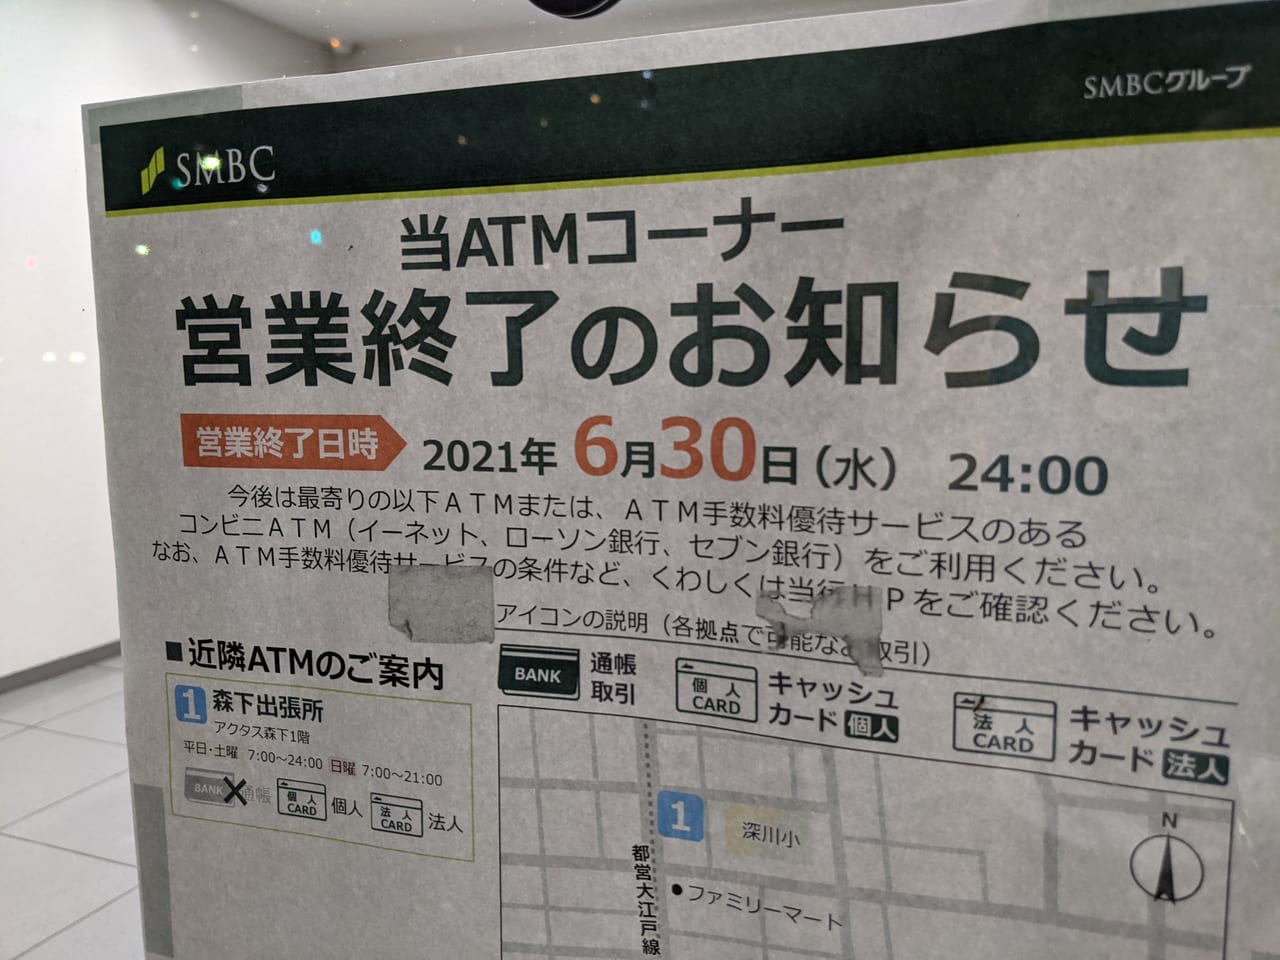 三井住友銀行・白河出張所のATM営業終了のお知らせの貼り紙